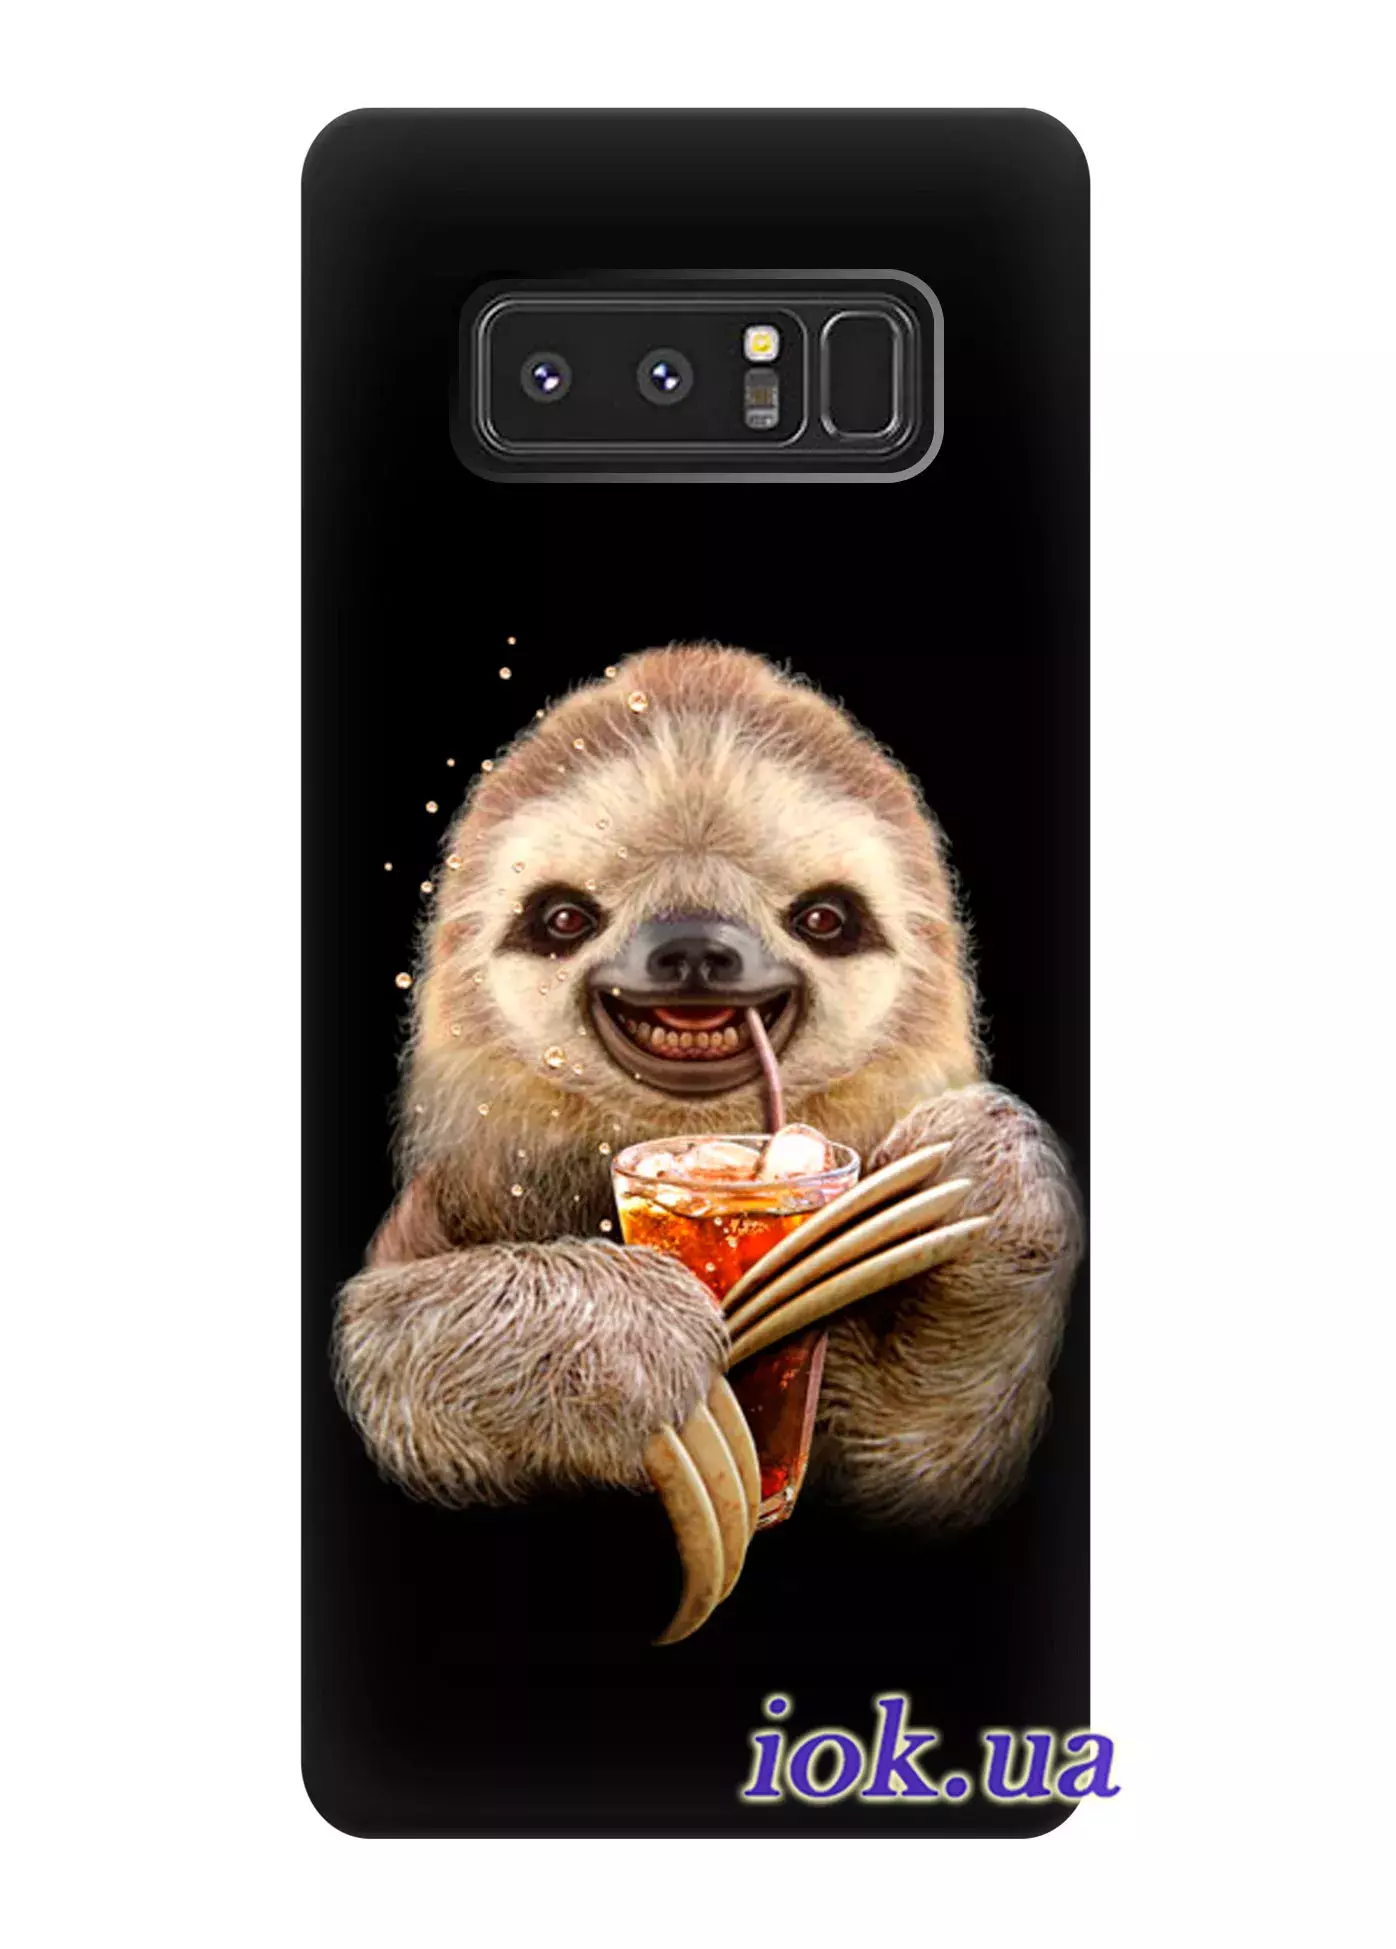 Чехол для Galaxy Note 8 - Позитивный зверёк